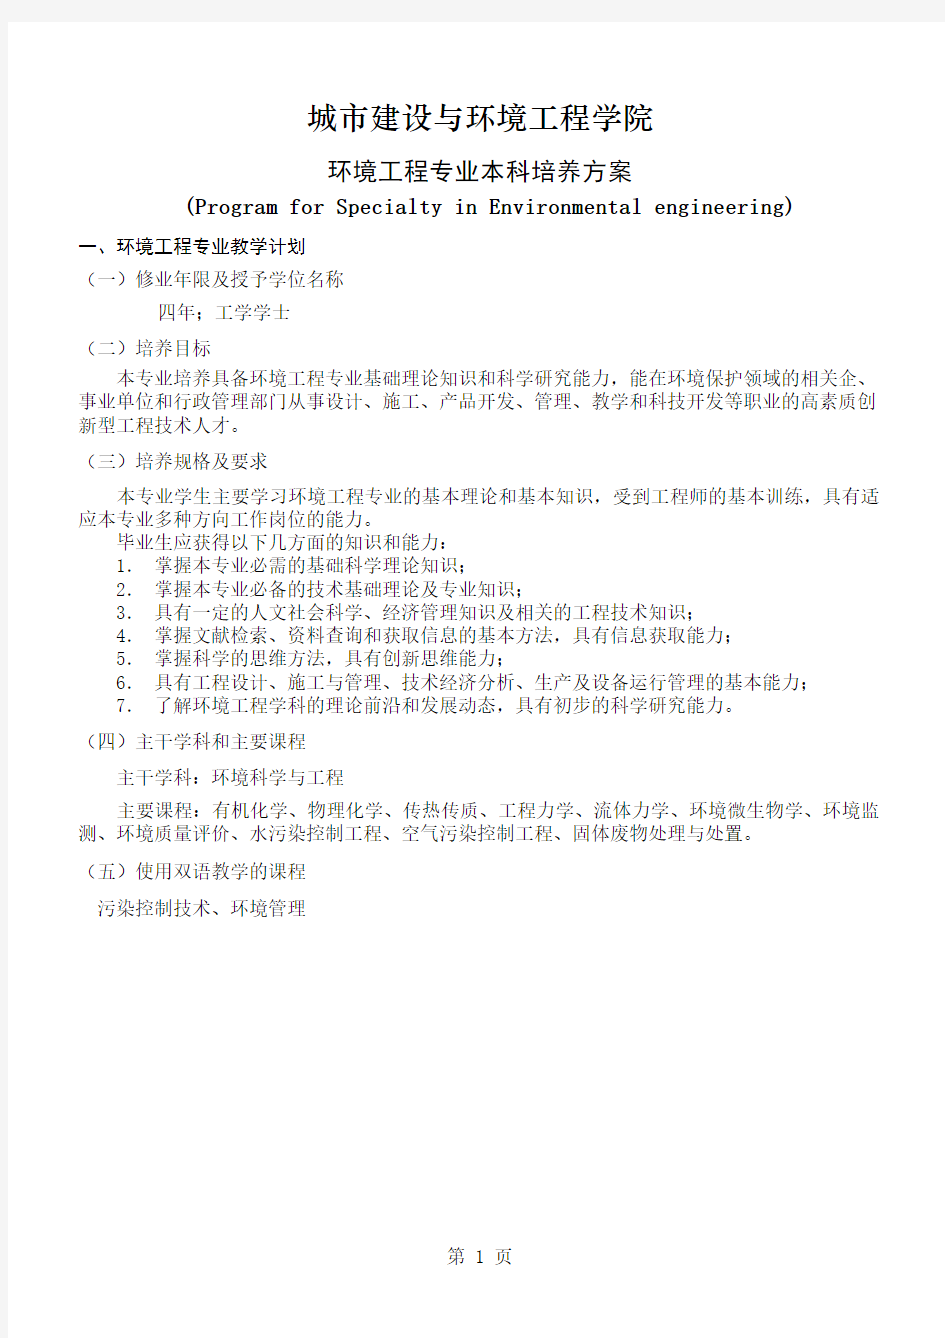 重庆大学环境工程专业培养计划